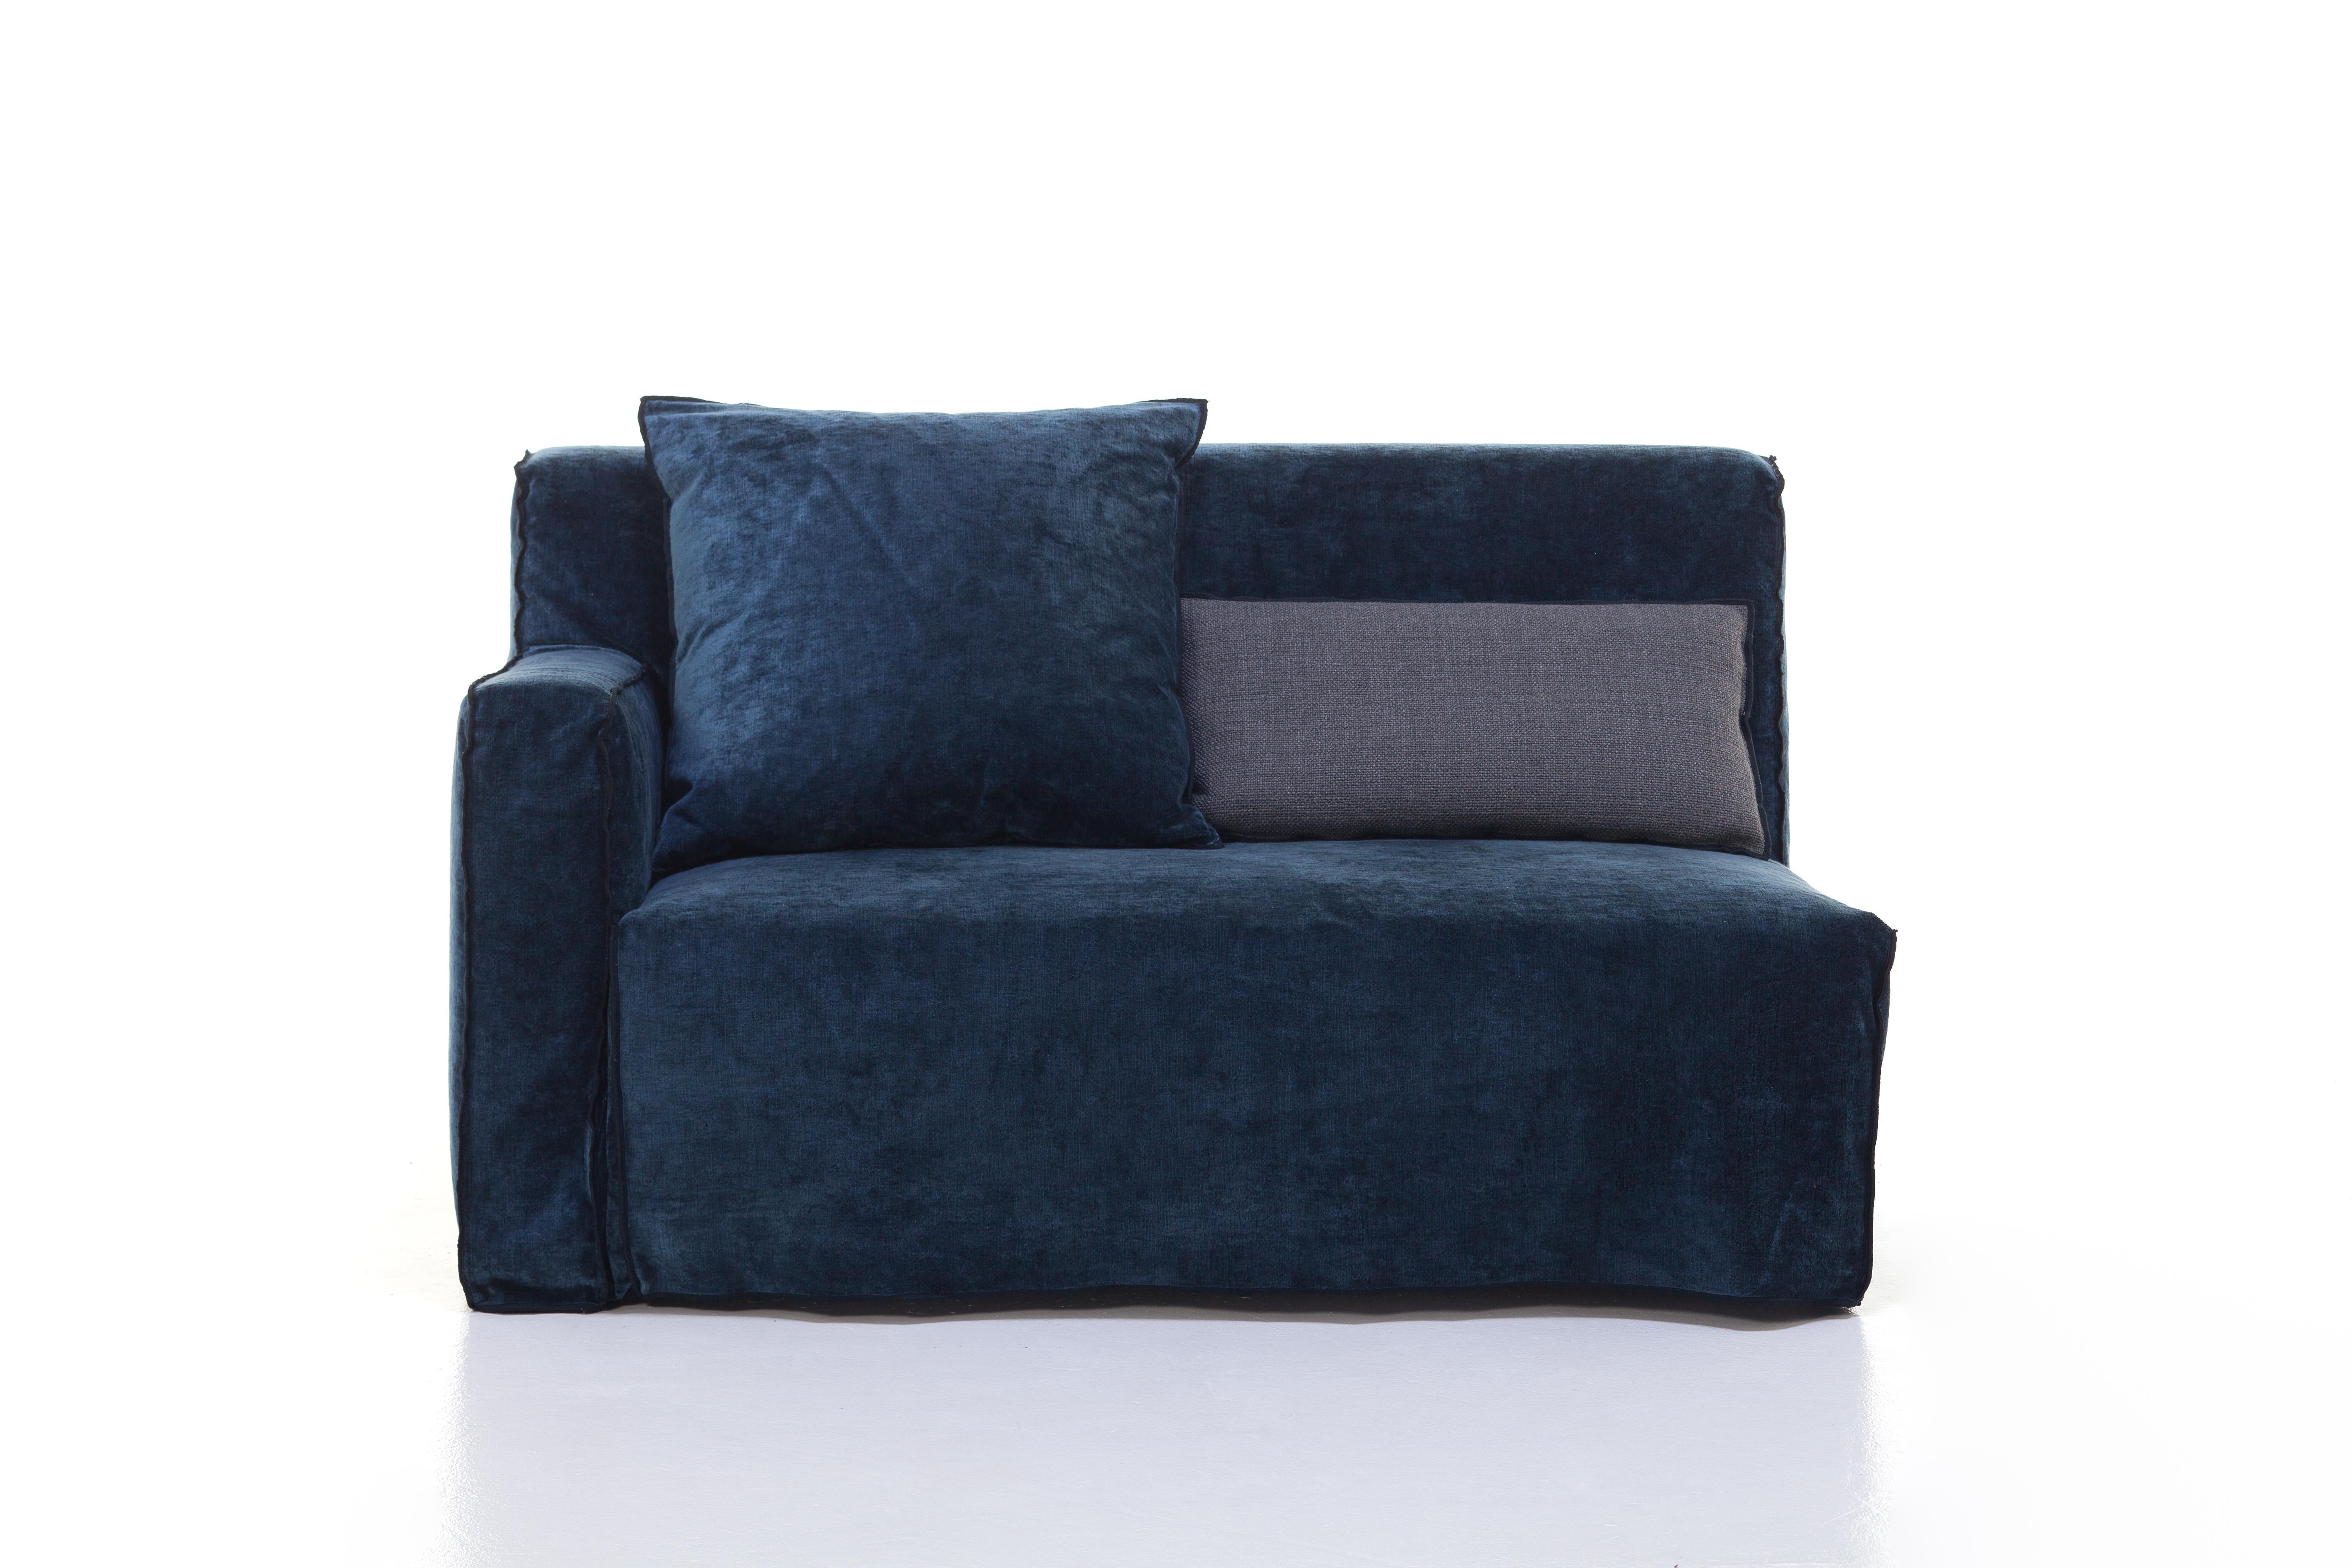 Modern Gervasoni More 07 Left Armrest Modular Sofa in Midnight Upholstery, Paola Navone